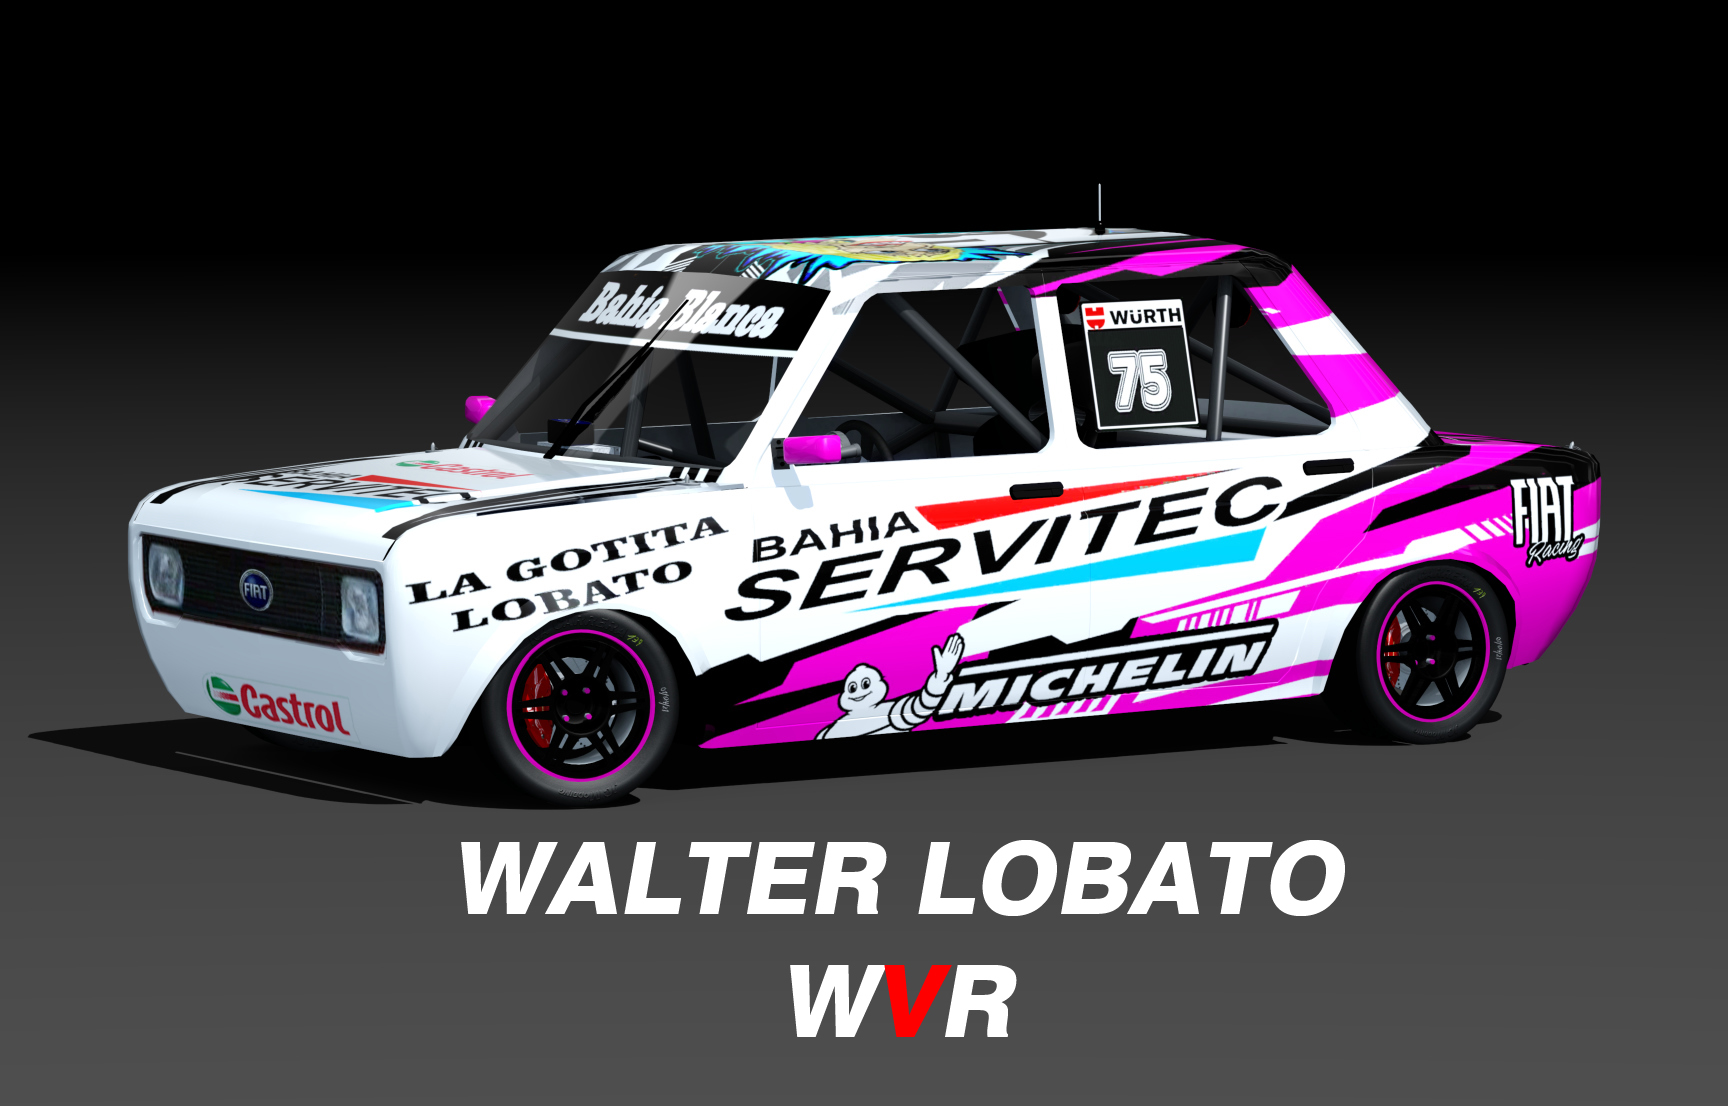 WVR Turismo 1.4 FIAT 128, skin walter lobato